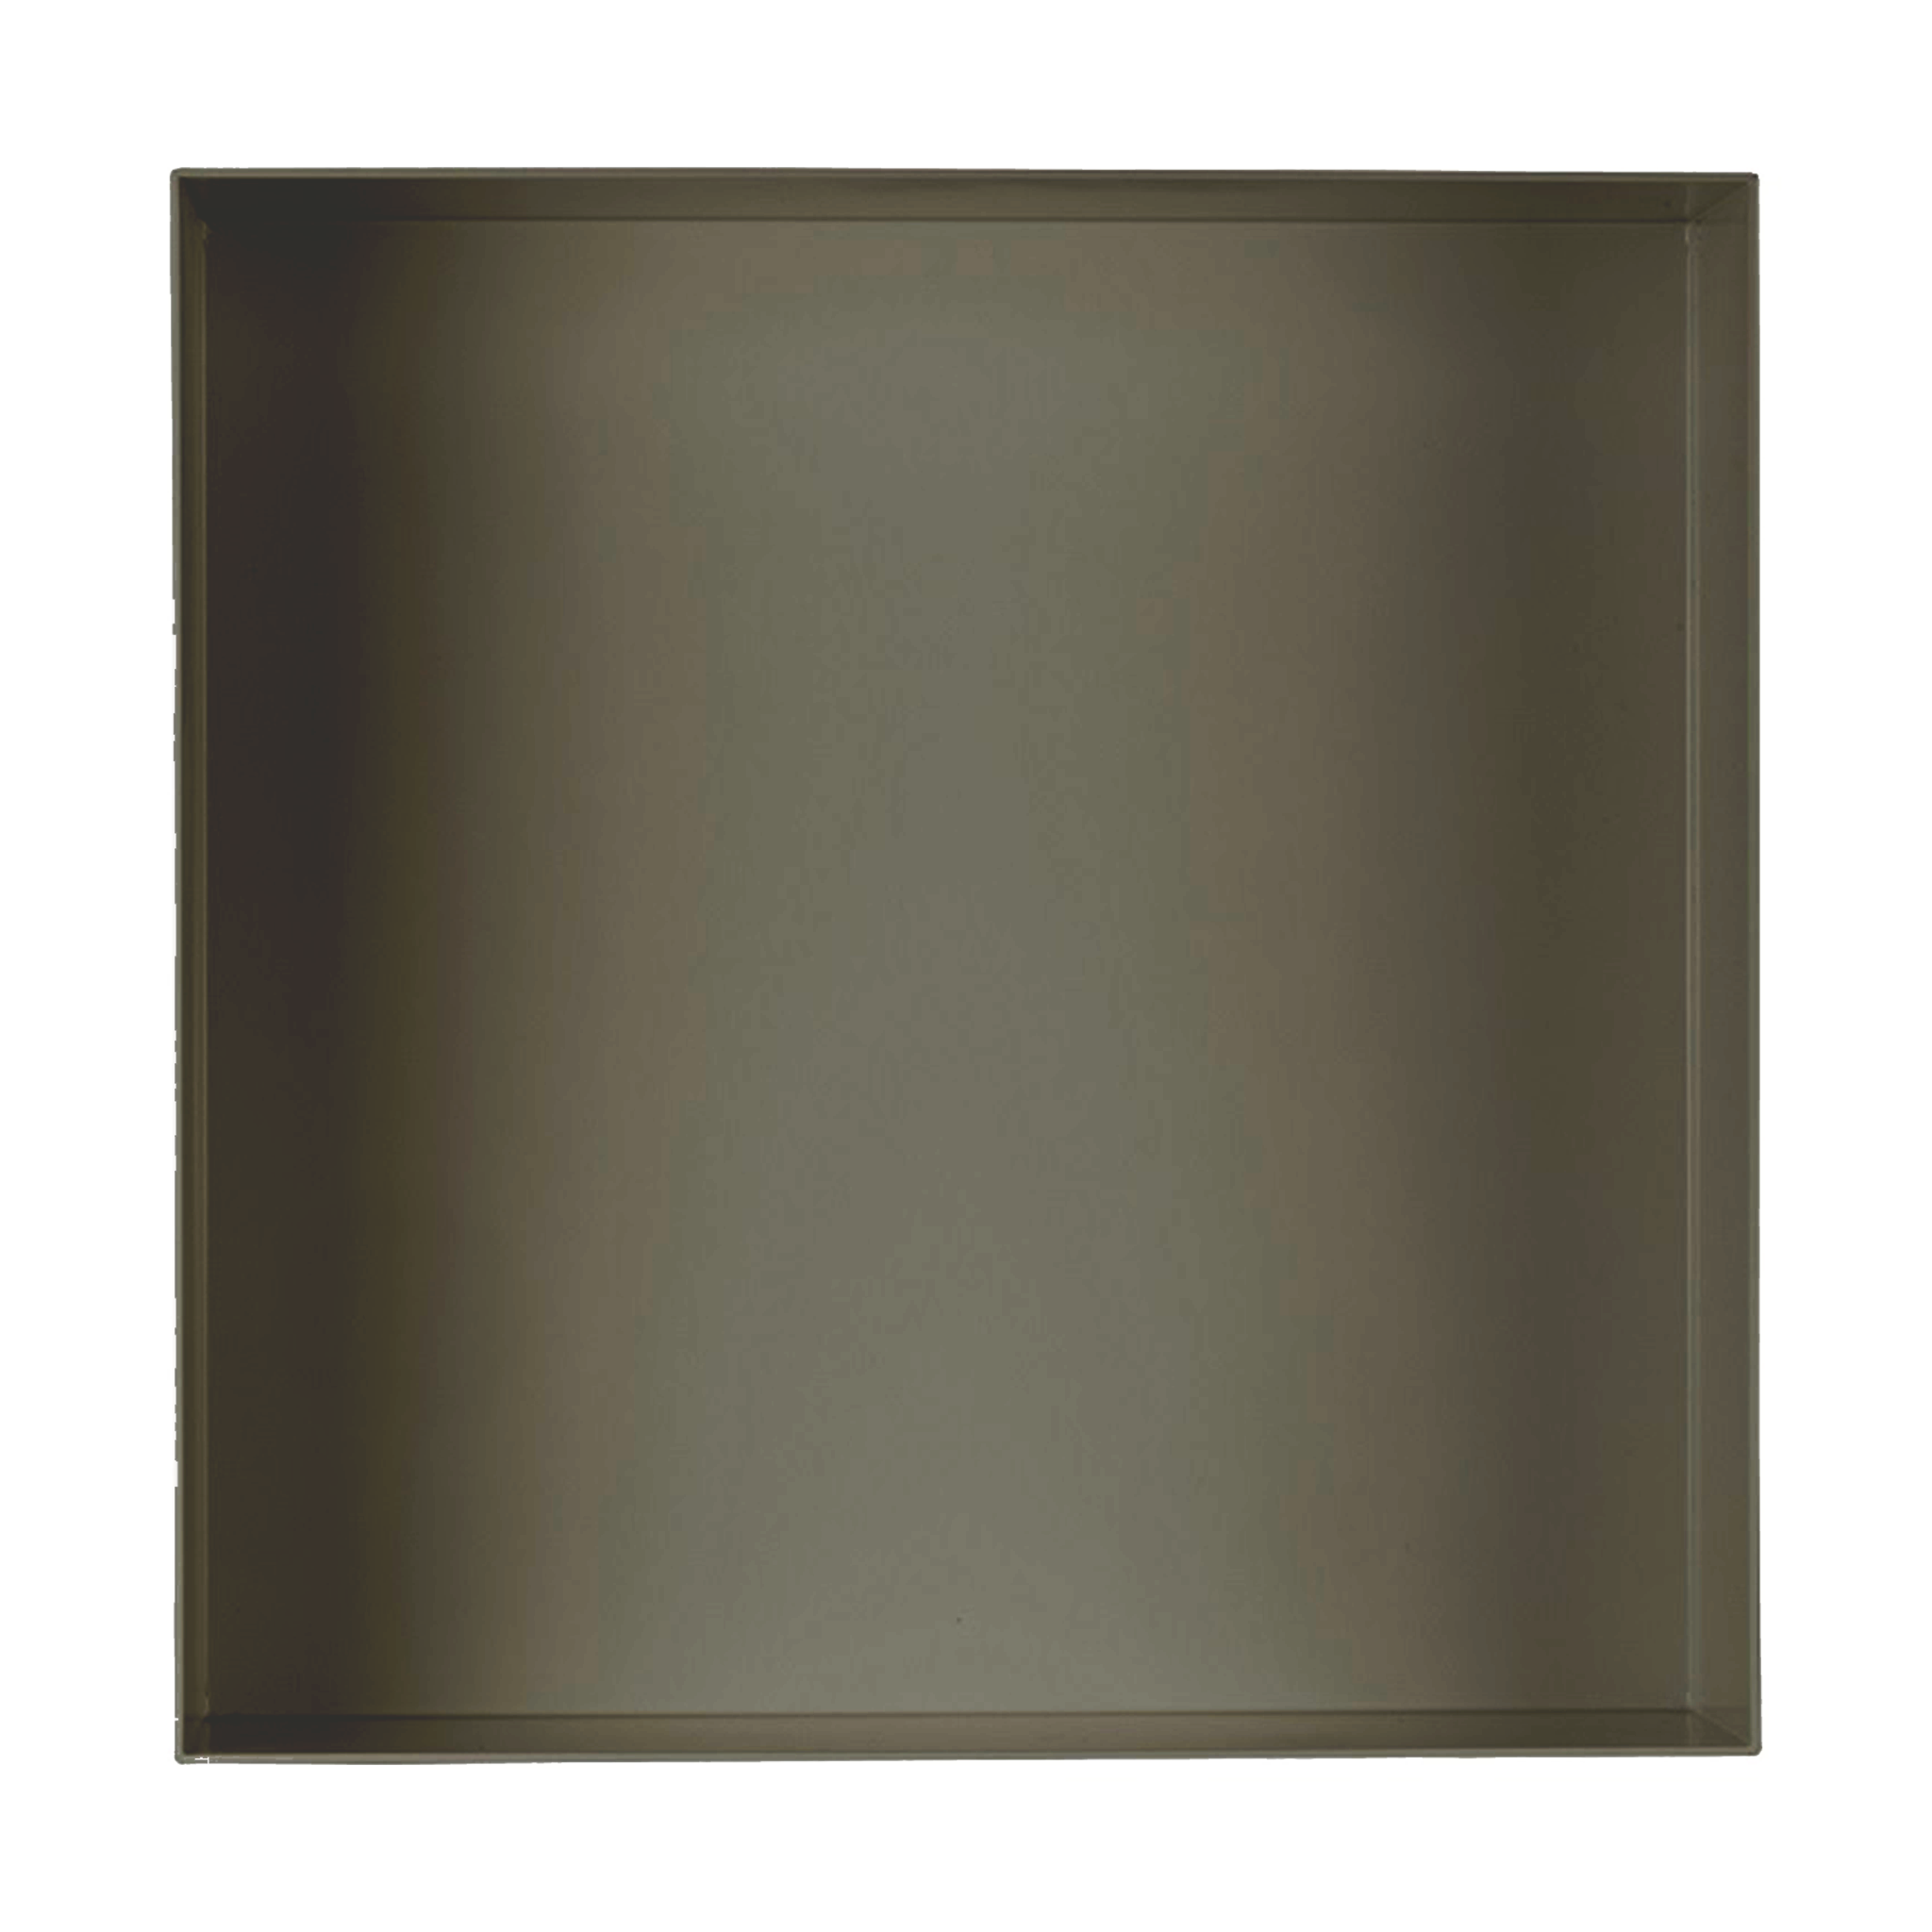 Valli Home – V-Box, Nicchia portaoggetti in Metallo smaltato color Grigio Scuro KK71, Misura 40X40 P. 10 cm – V-BOX.MLLO.40X40.71